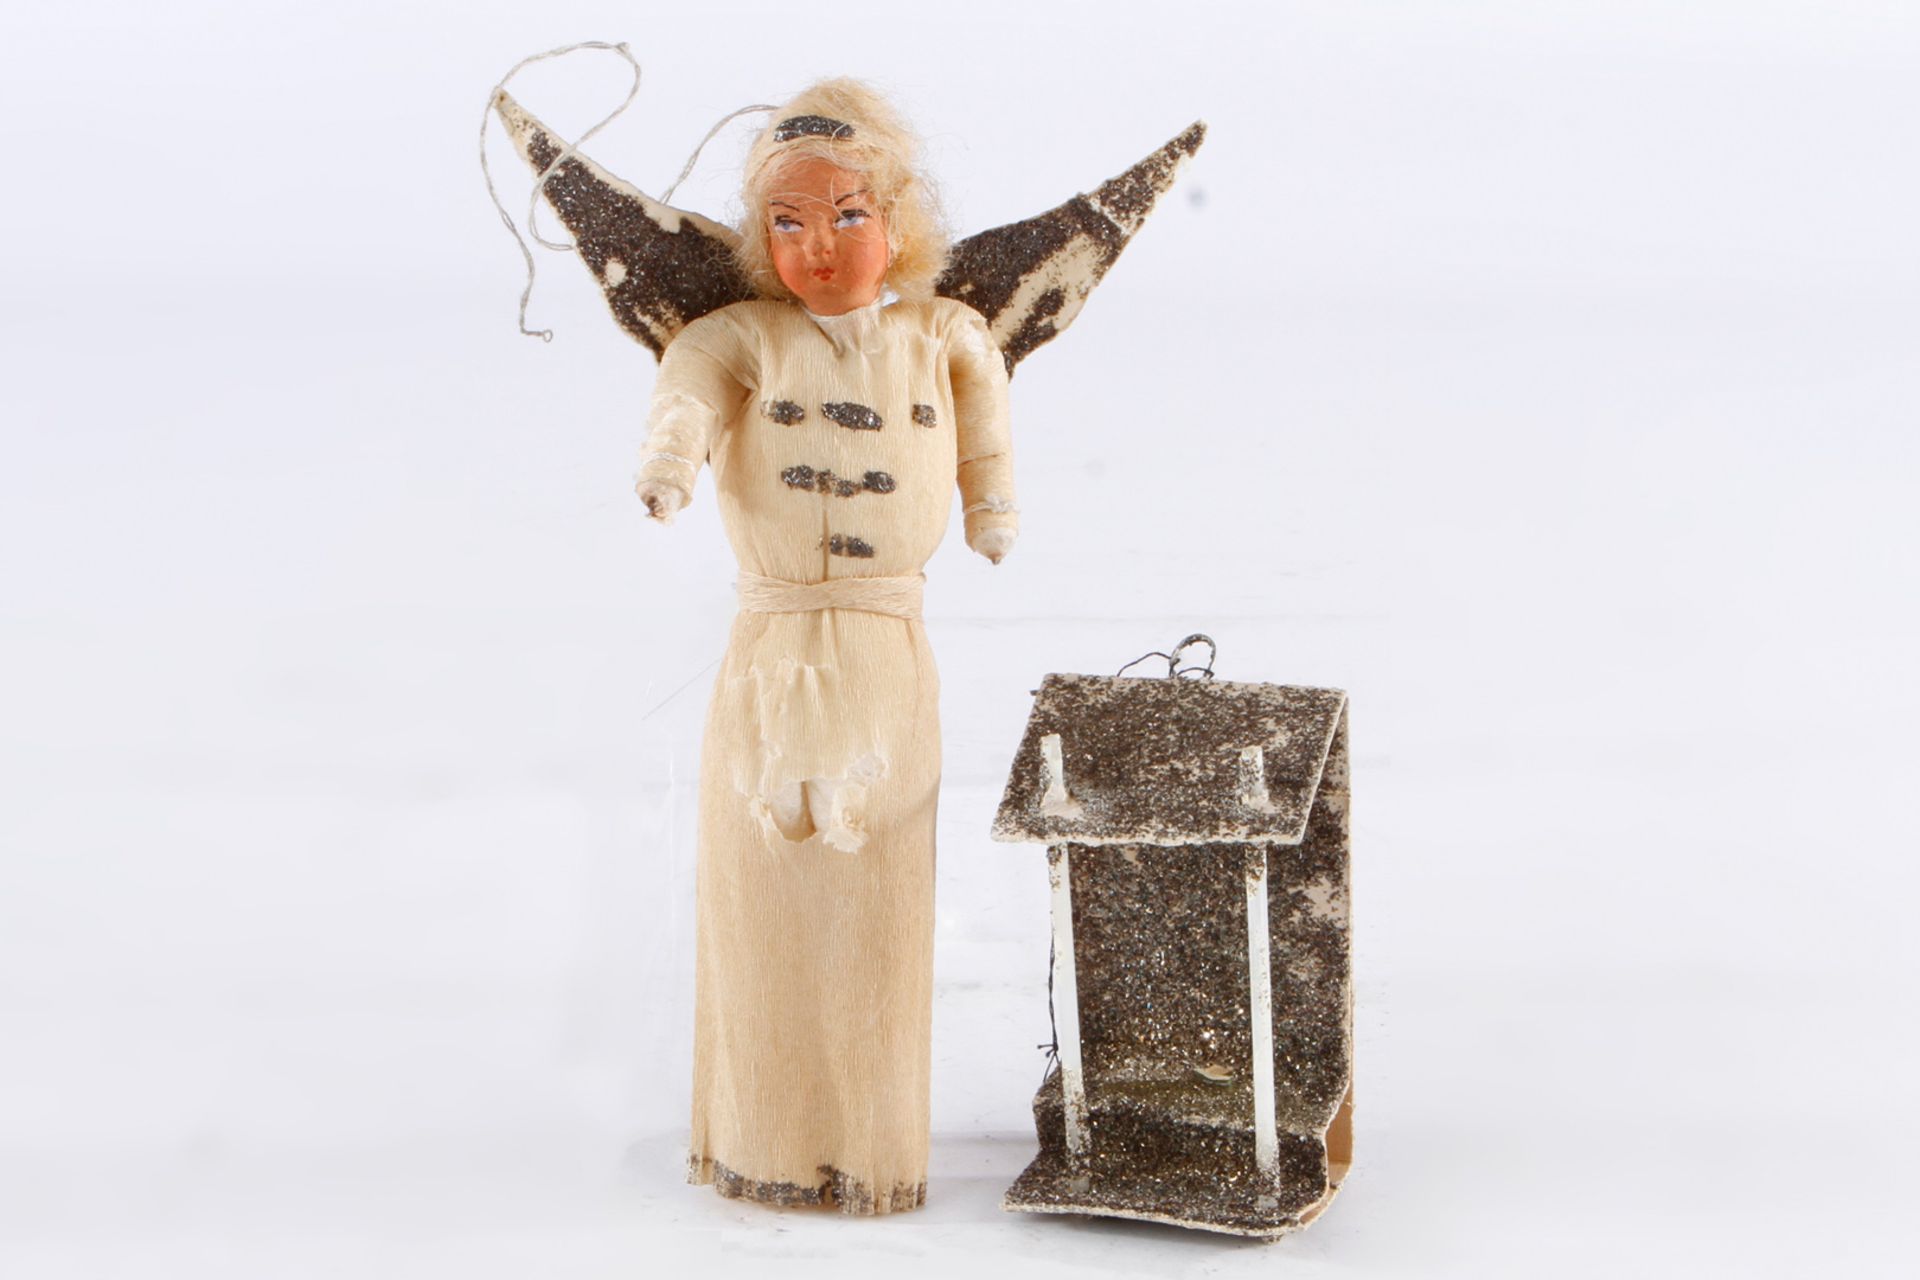 Engel als Weihnachtsanhänger, wohl 20er Jahre, Figur aus Draht, Watte und Papier, Massekopf